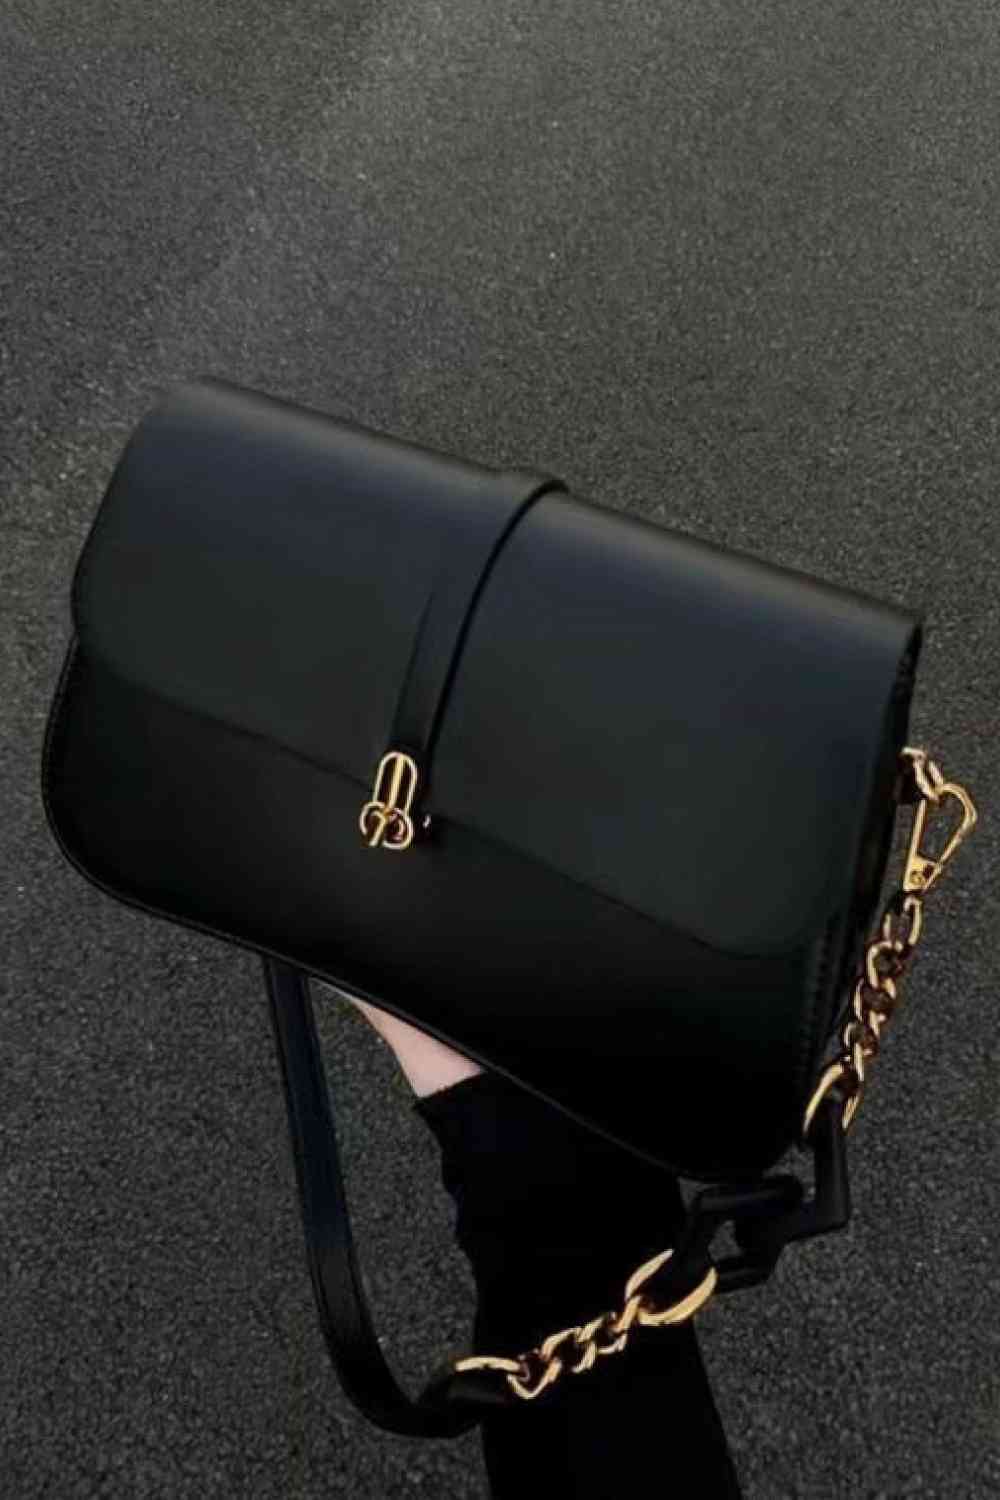 Adored PU Leather Shoulder Bag Black One Size